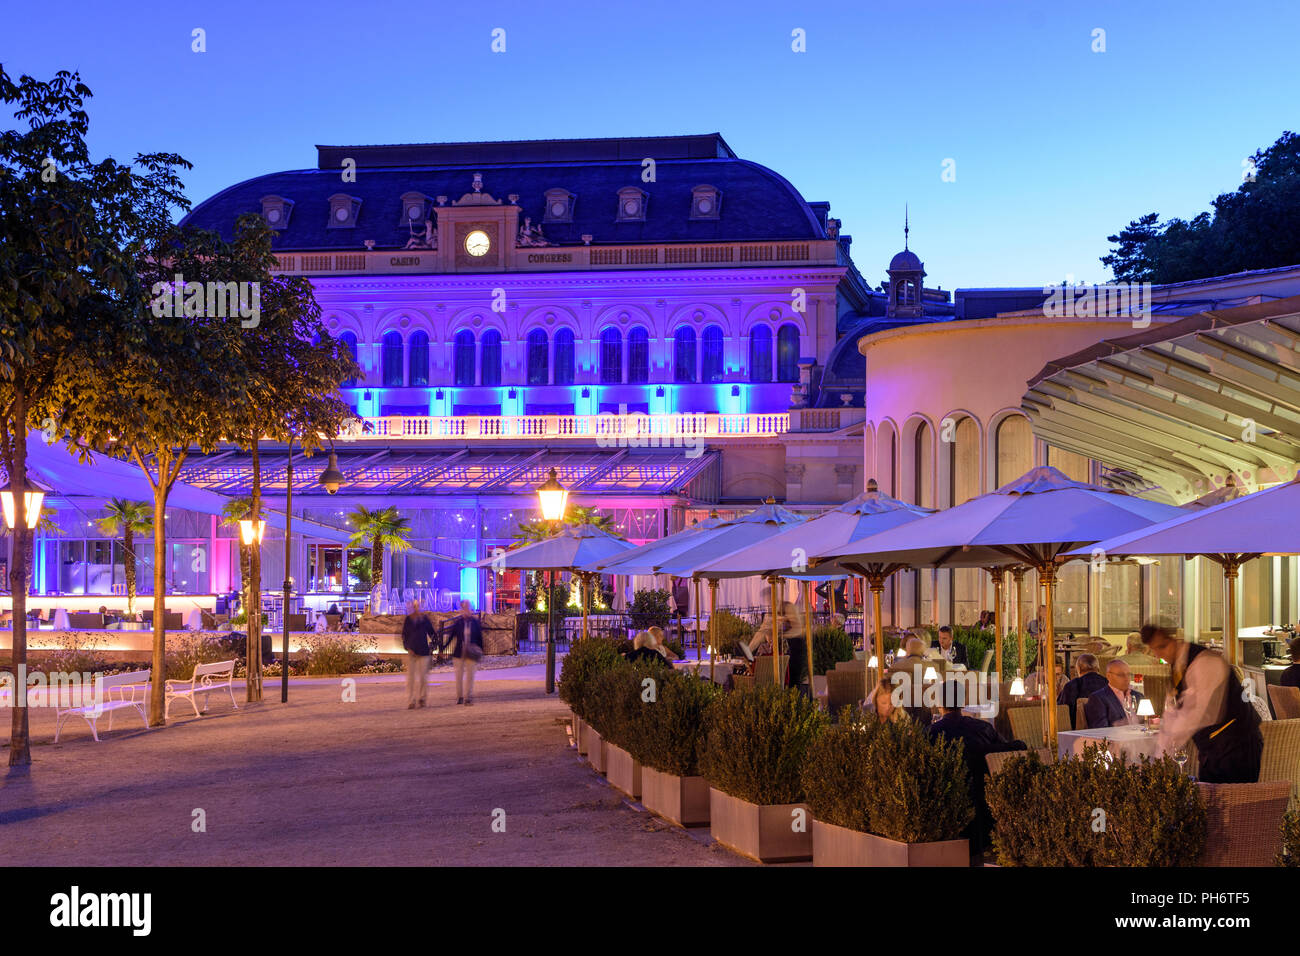 Baden: Casino Baden, ristorante, Wienerwald, Vienna Woods, Niederösterreich, Austria Inferiore, Austria Foto Stock